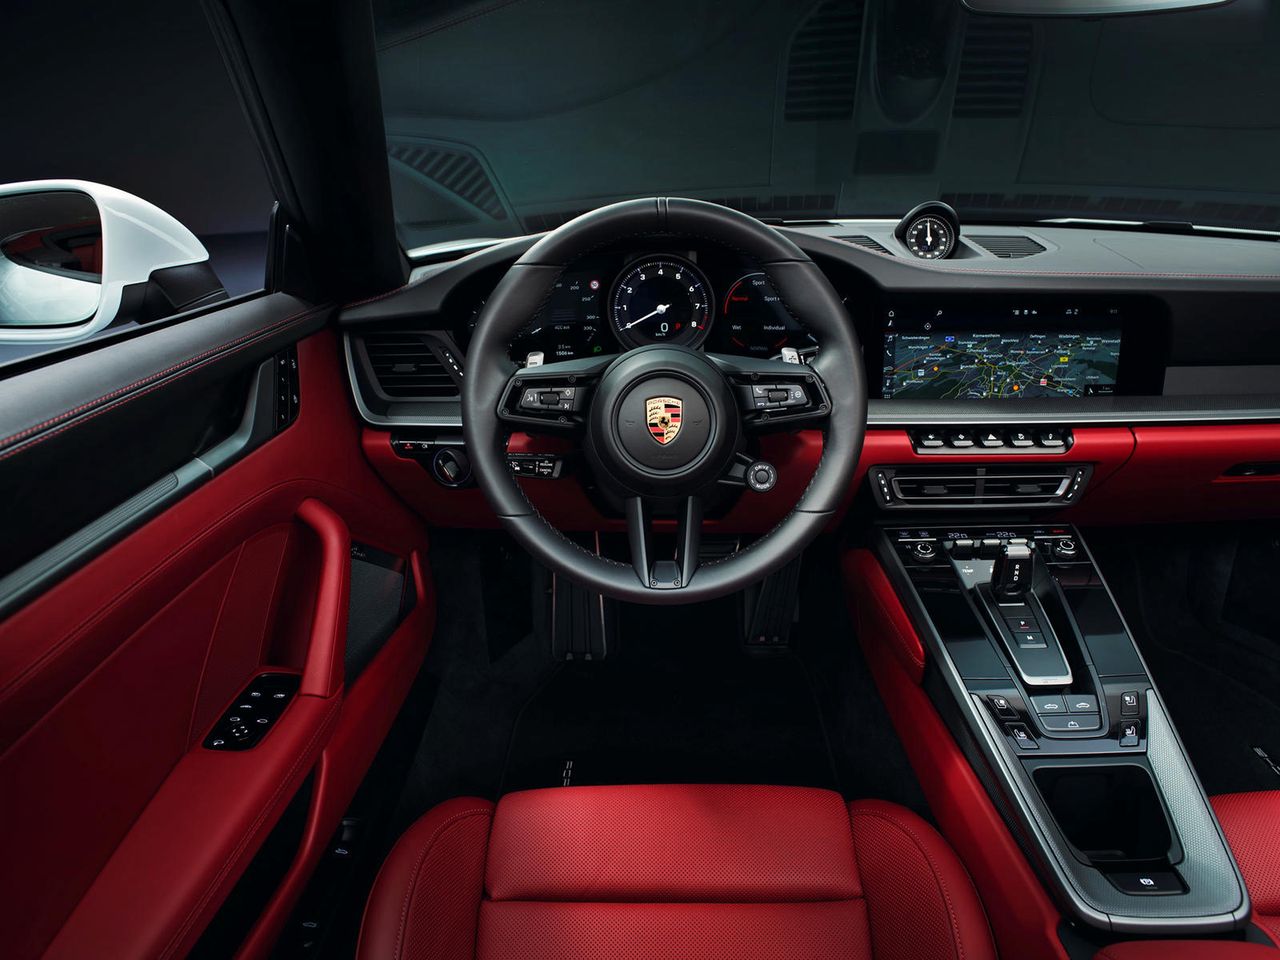 Porsche 911 - interior